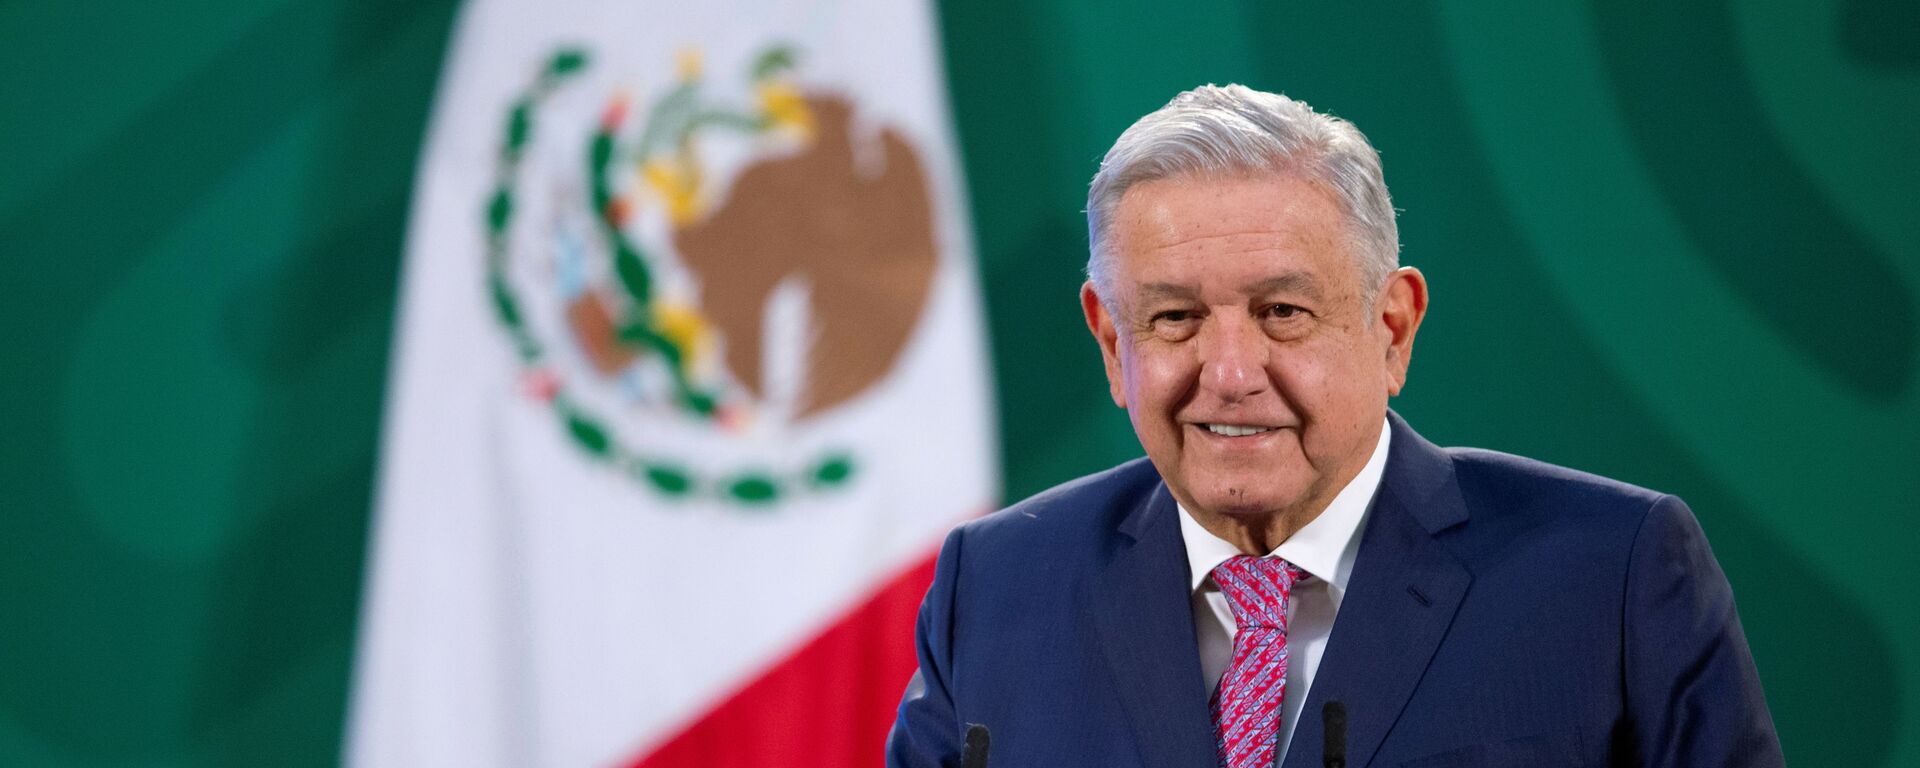 Andrés Manuel López Obrador, presidente de México - Sputnik Mundo, 1920, 02.03.2021